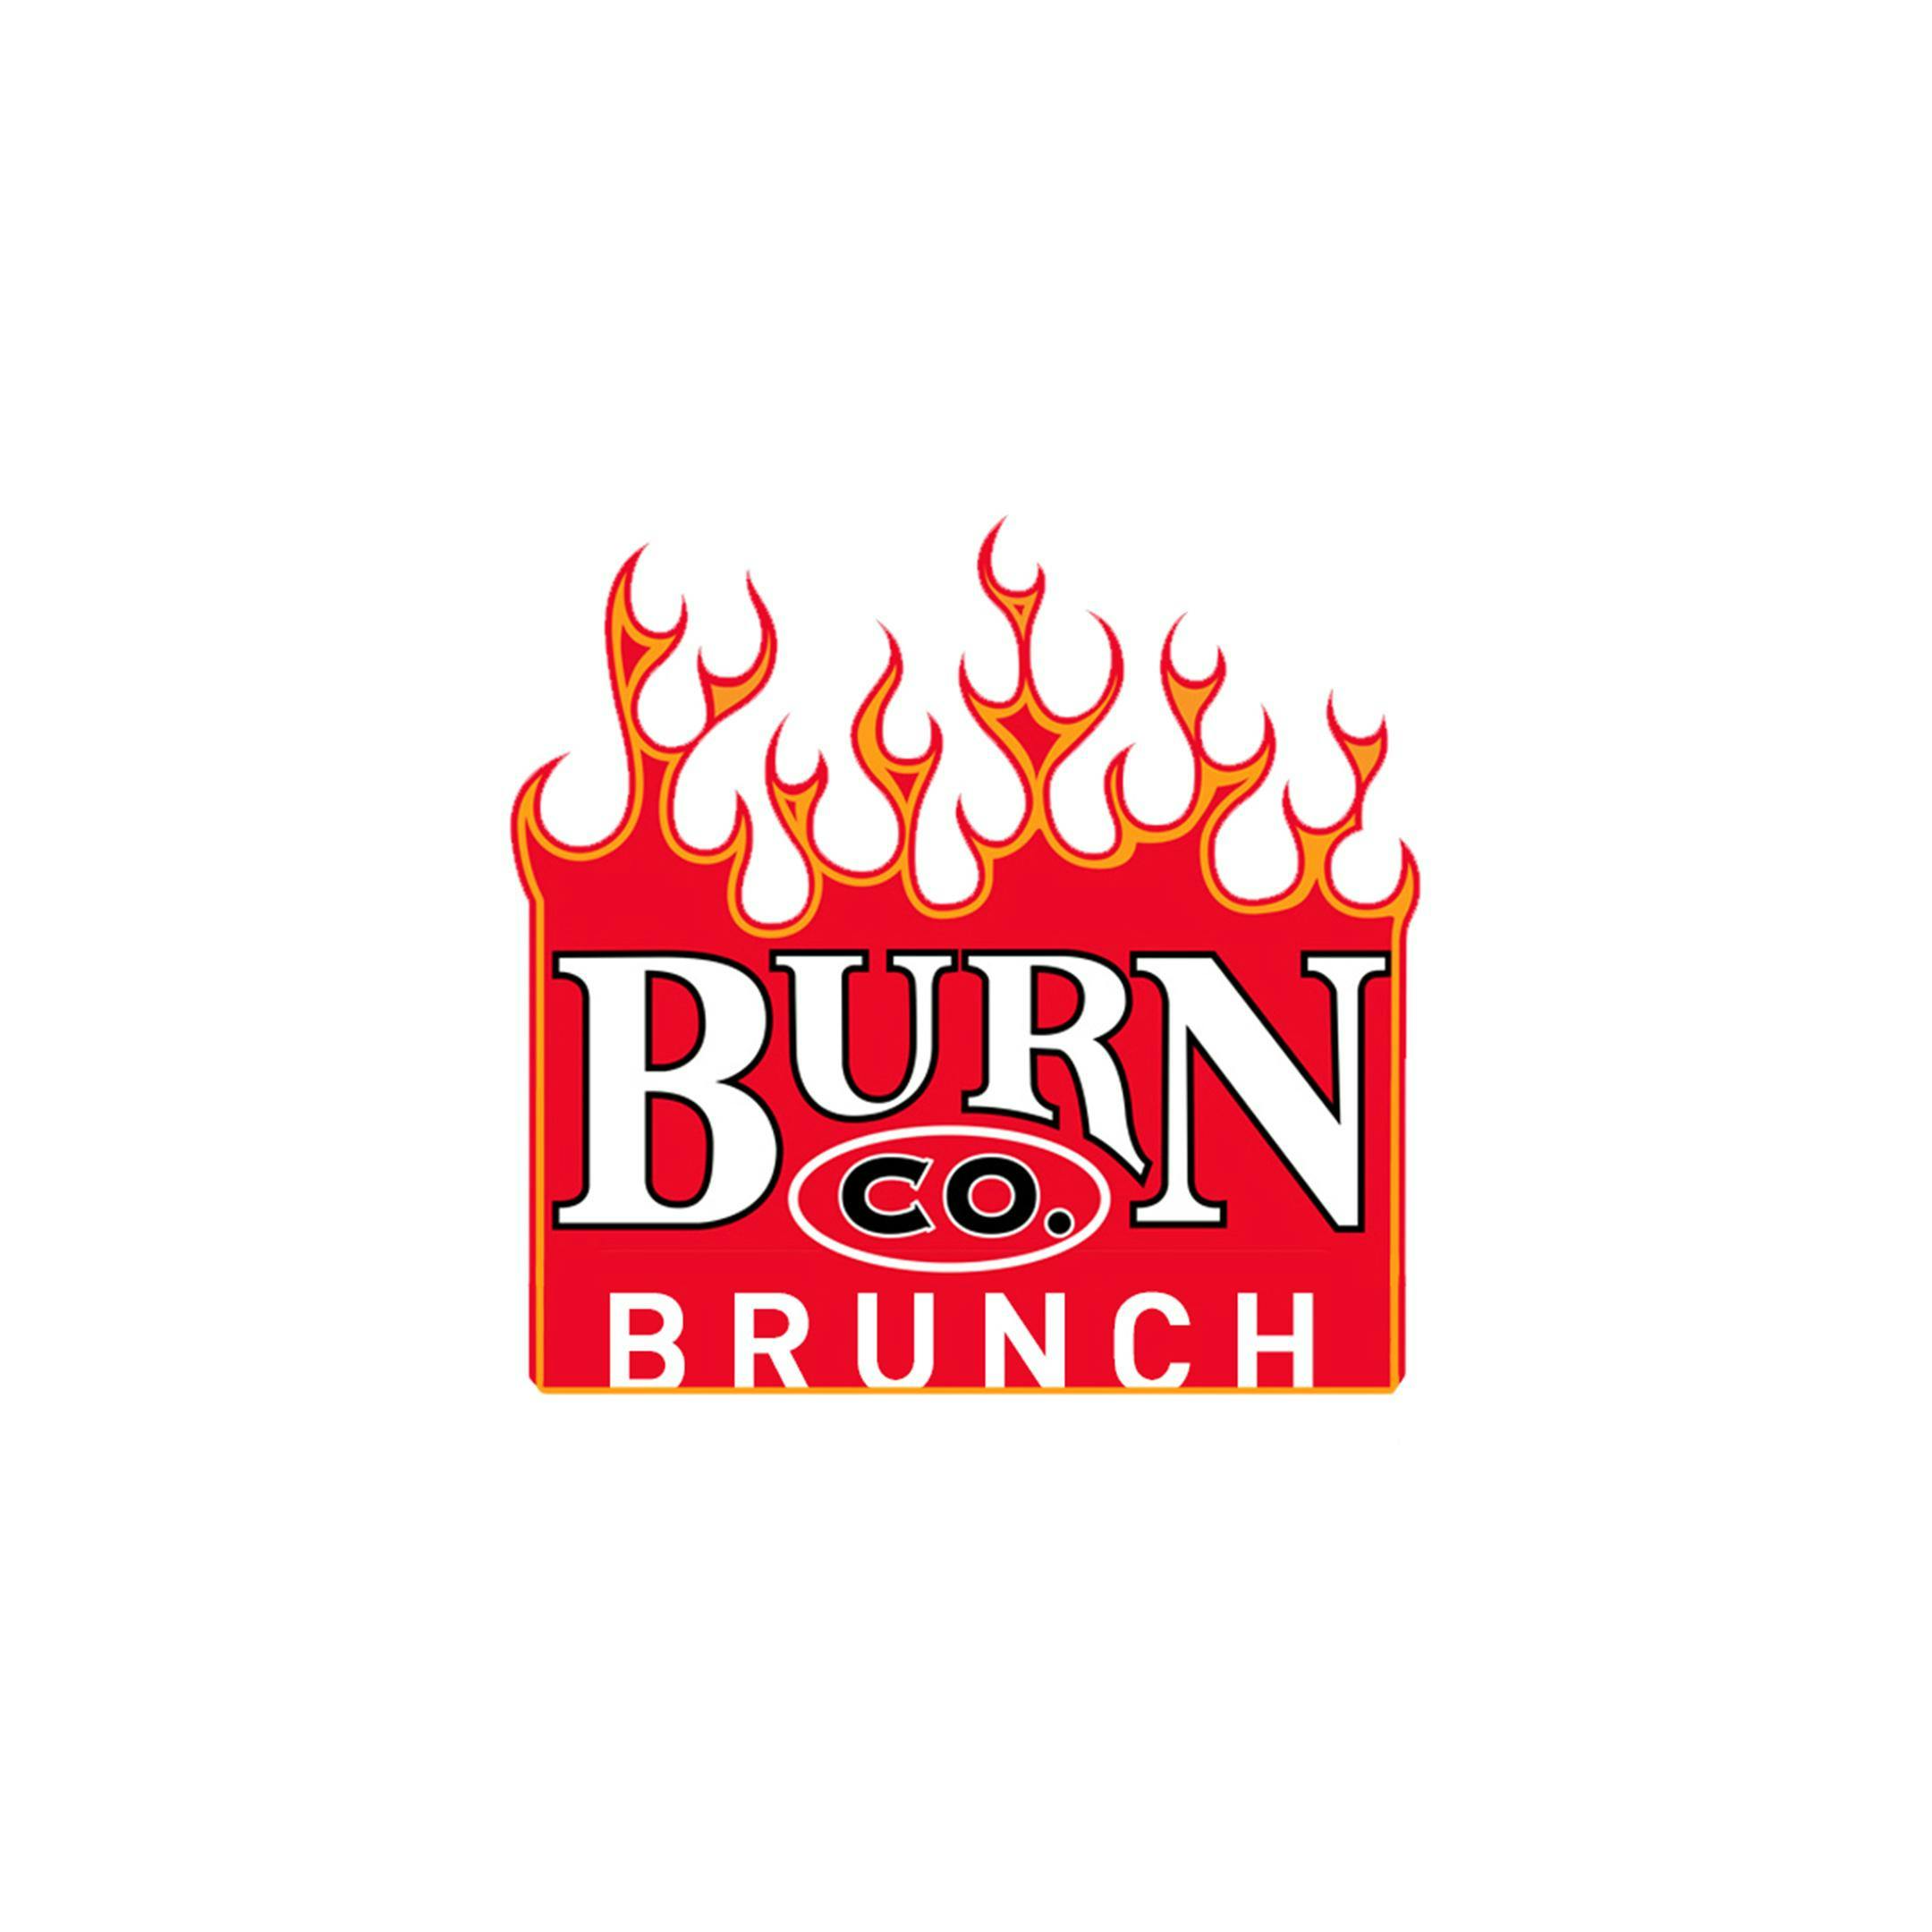 Burn Co Brunch with Brad Fielder